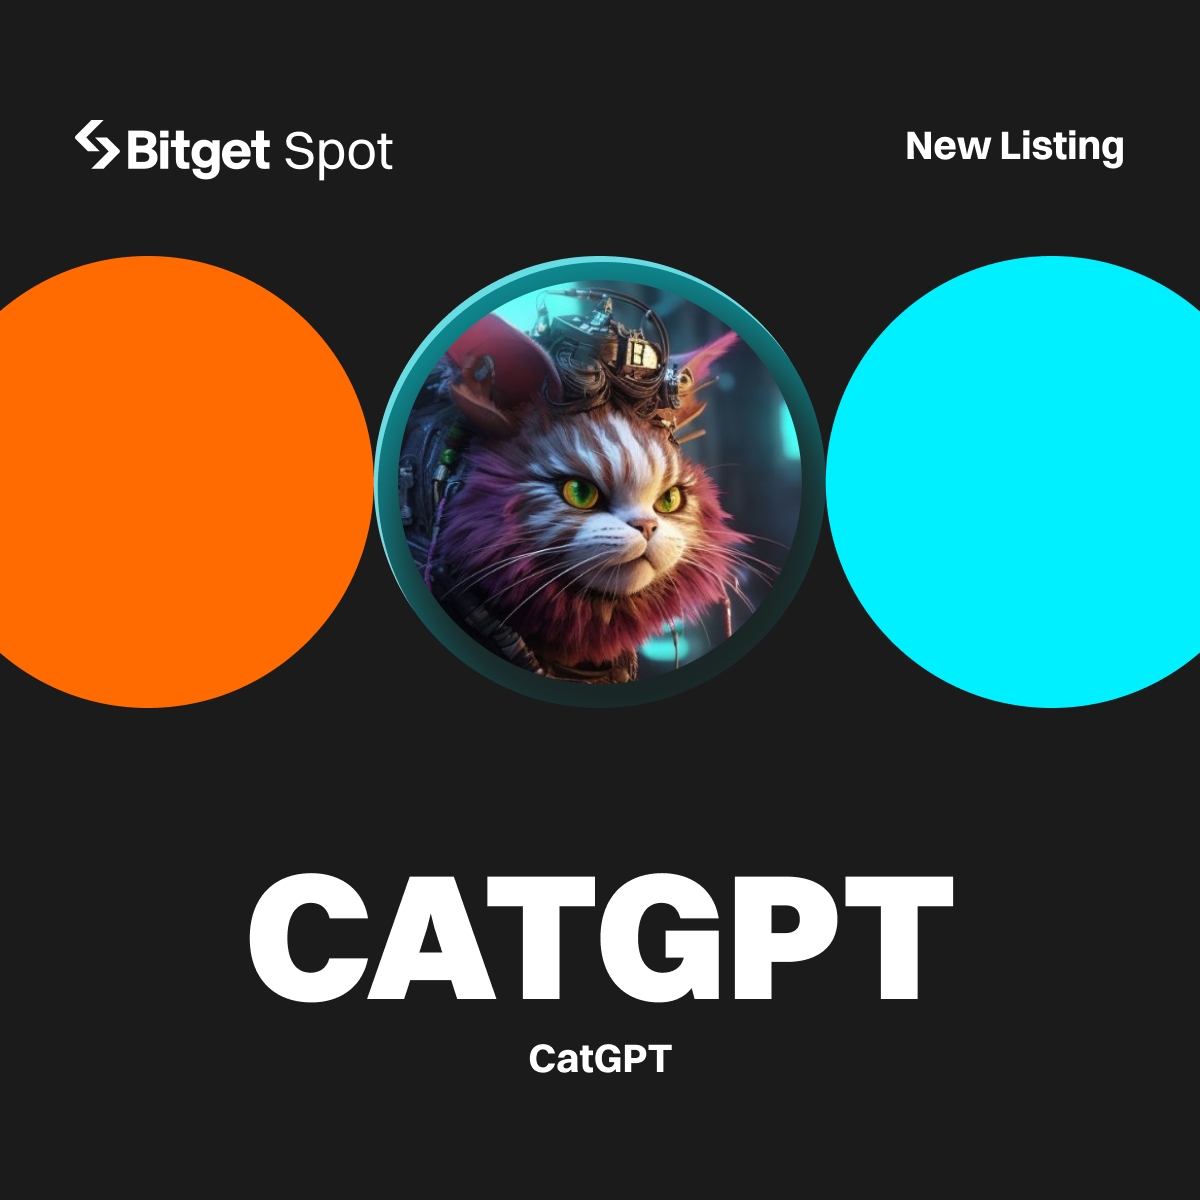 📢 Mamy tu kociarzy? My mamy kolejnego na #BitgetSpot, specjalnie dla Was! $CATGPT
od @CATGPT_MeMe!🐱

#Bitget umieści CATGPT/USDT w Strefie Innowacji i Memów.

Więcej szczegółów: bitget.com/pl/support/art…

#CATGPTlistBitget